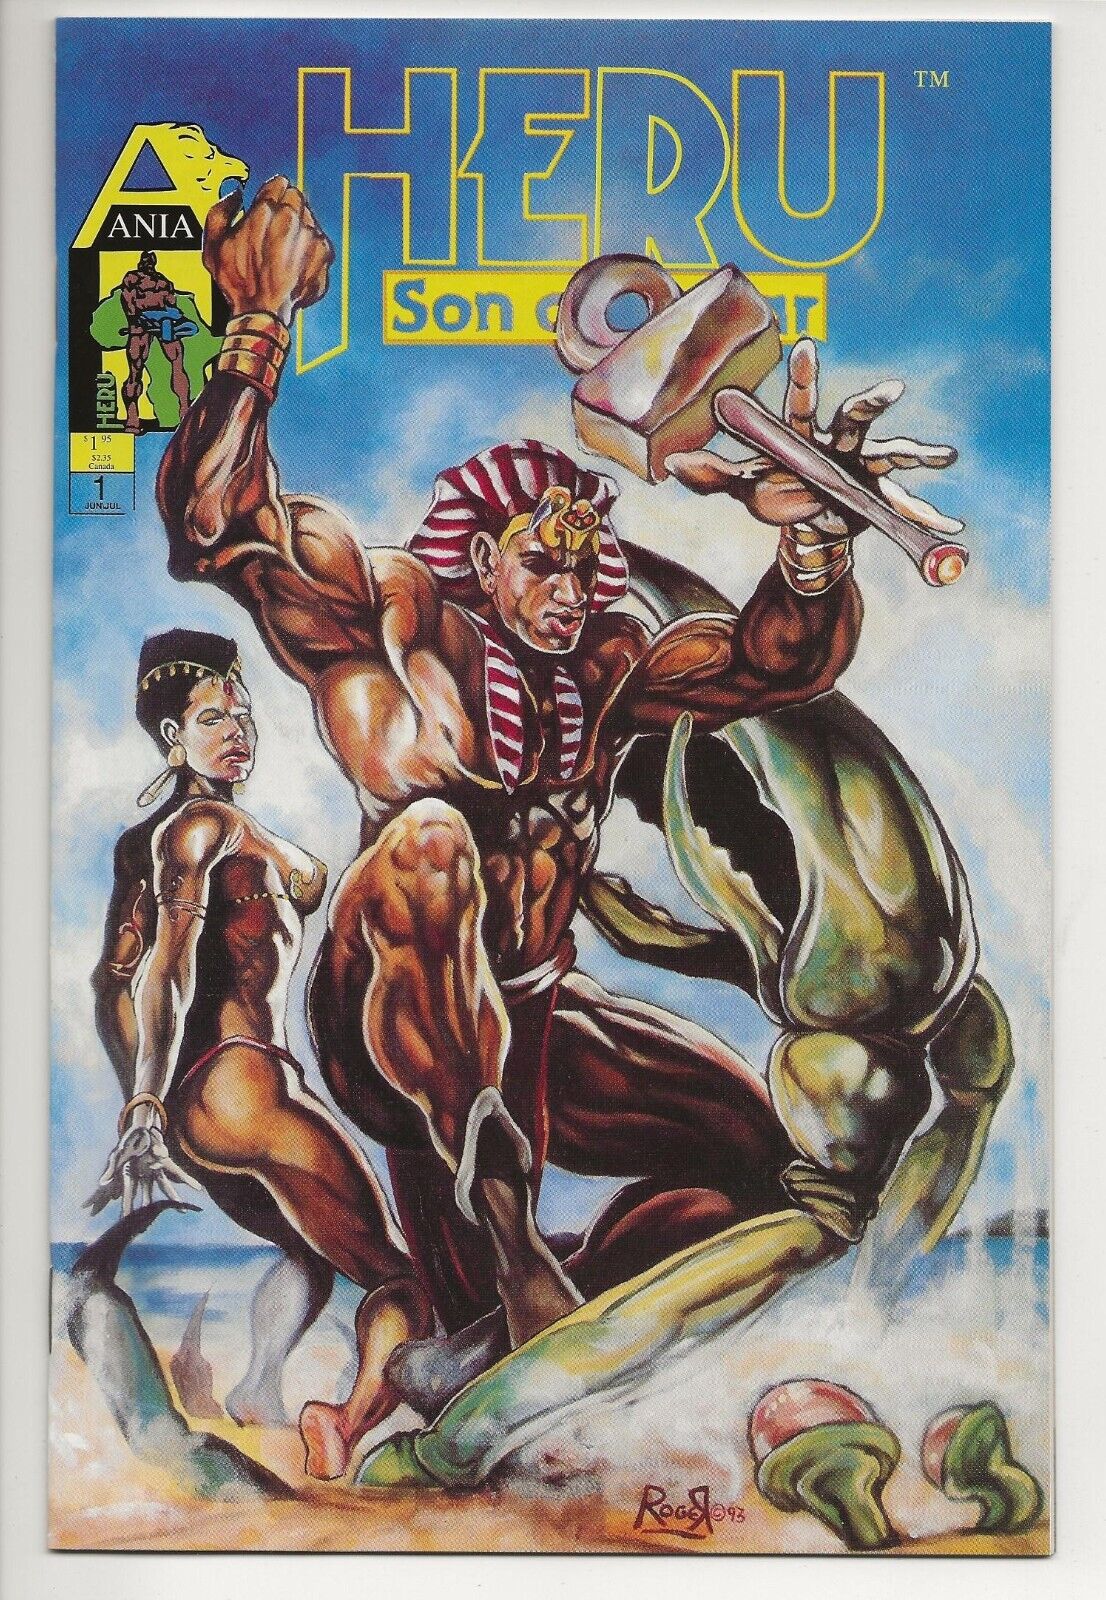 HERU SON OF AUSAR #1 Near Mint NM (Ania / Acme Comics 1986) Afrocentric Comic